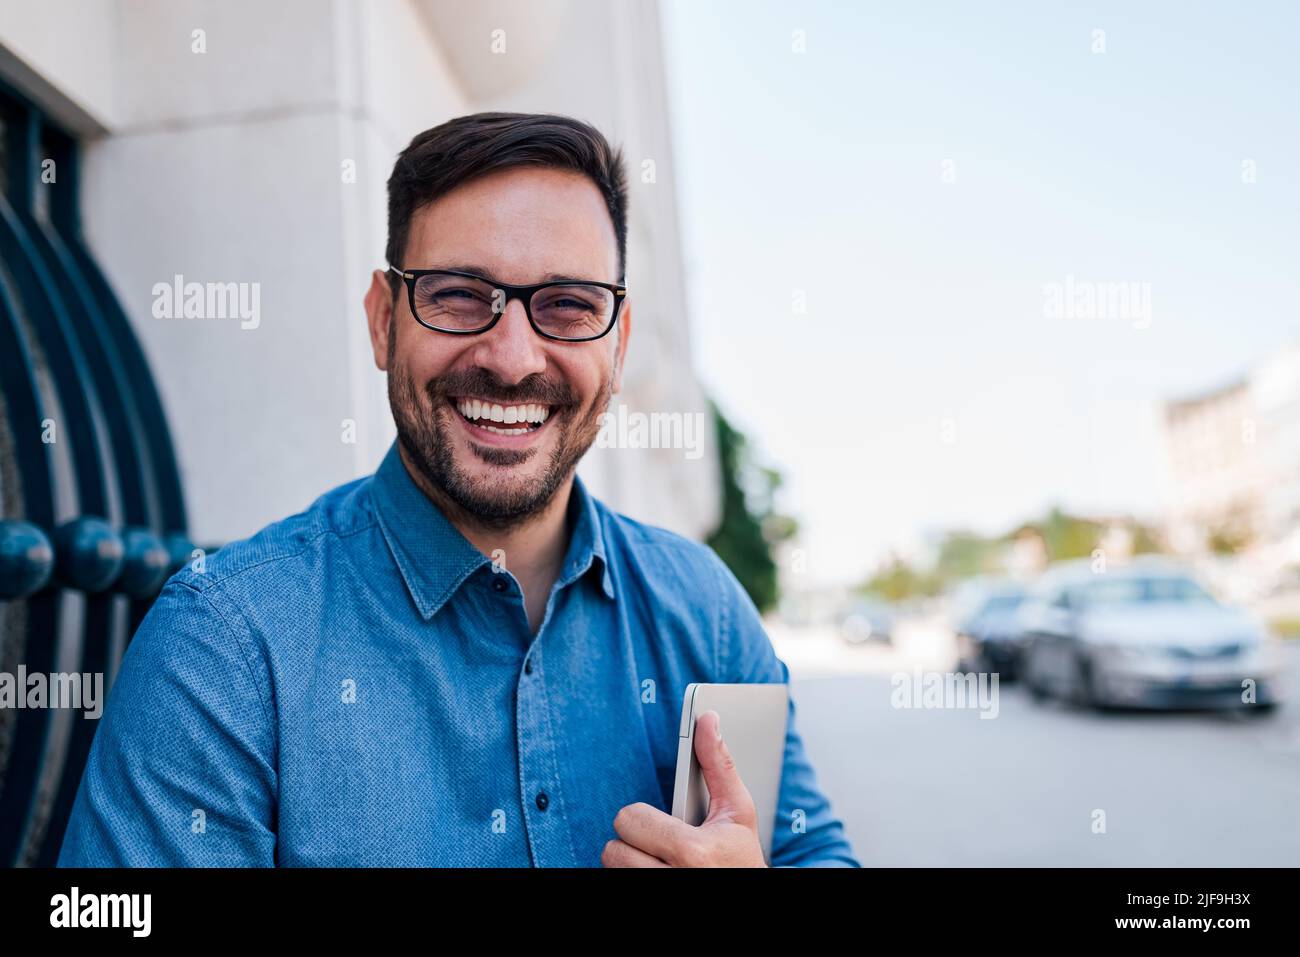 Portrait d'un homme d'affaires souriant tenant un ordinateur portable. Un homme joyeux, un homme de la direction, est assis contre le bâtiment. Il se déplace dans la ville. Banque D'Images